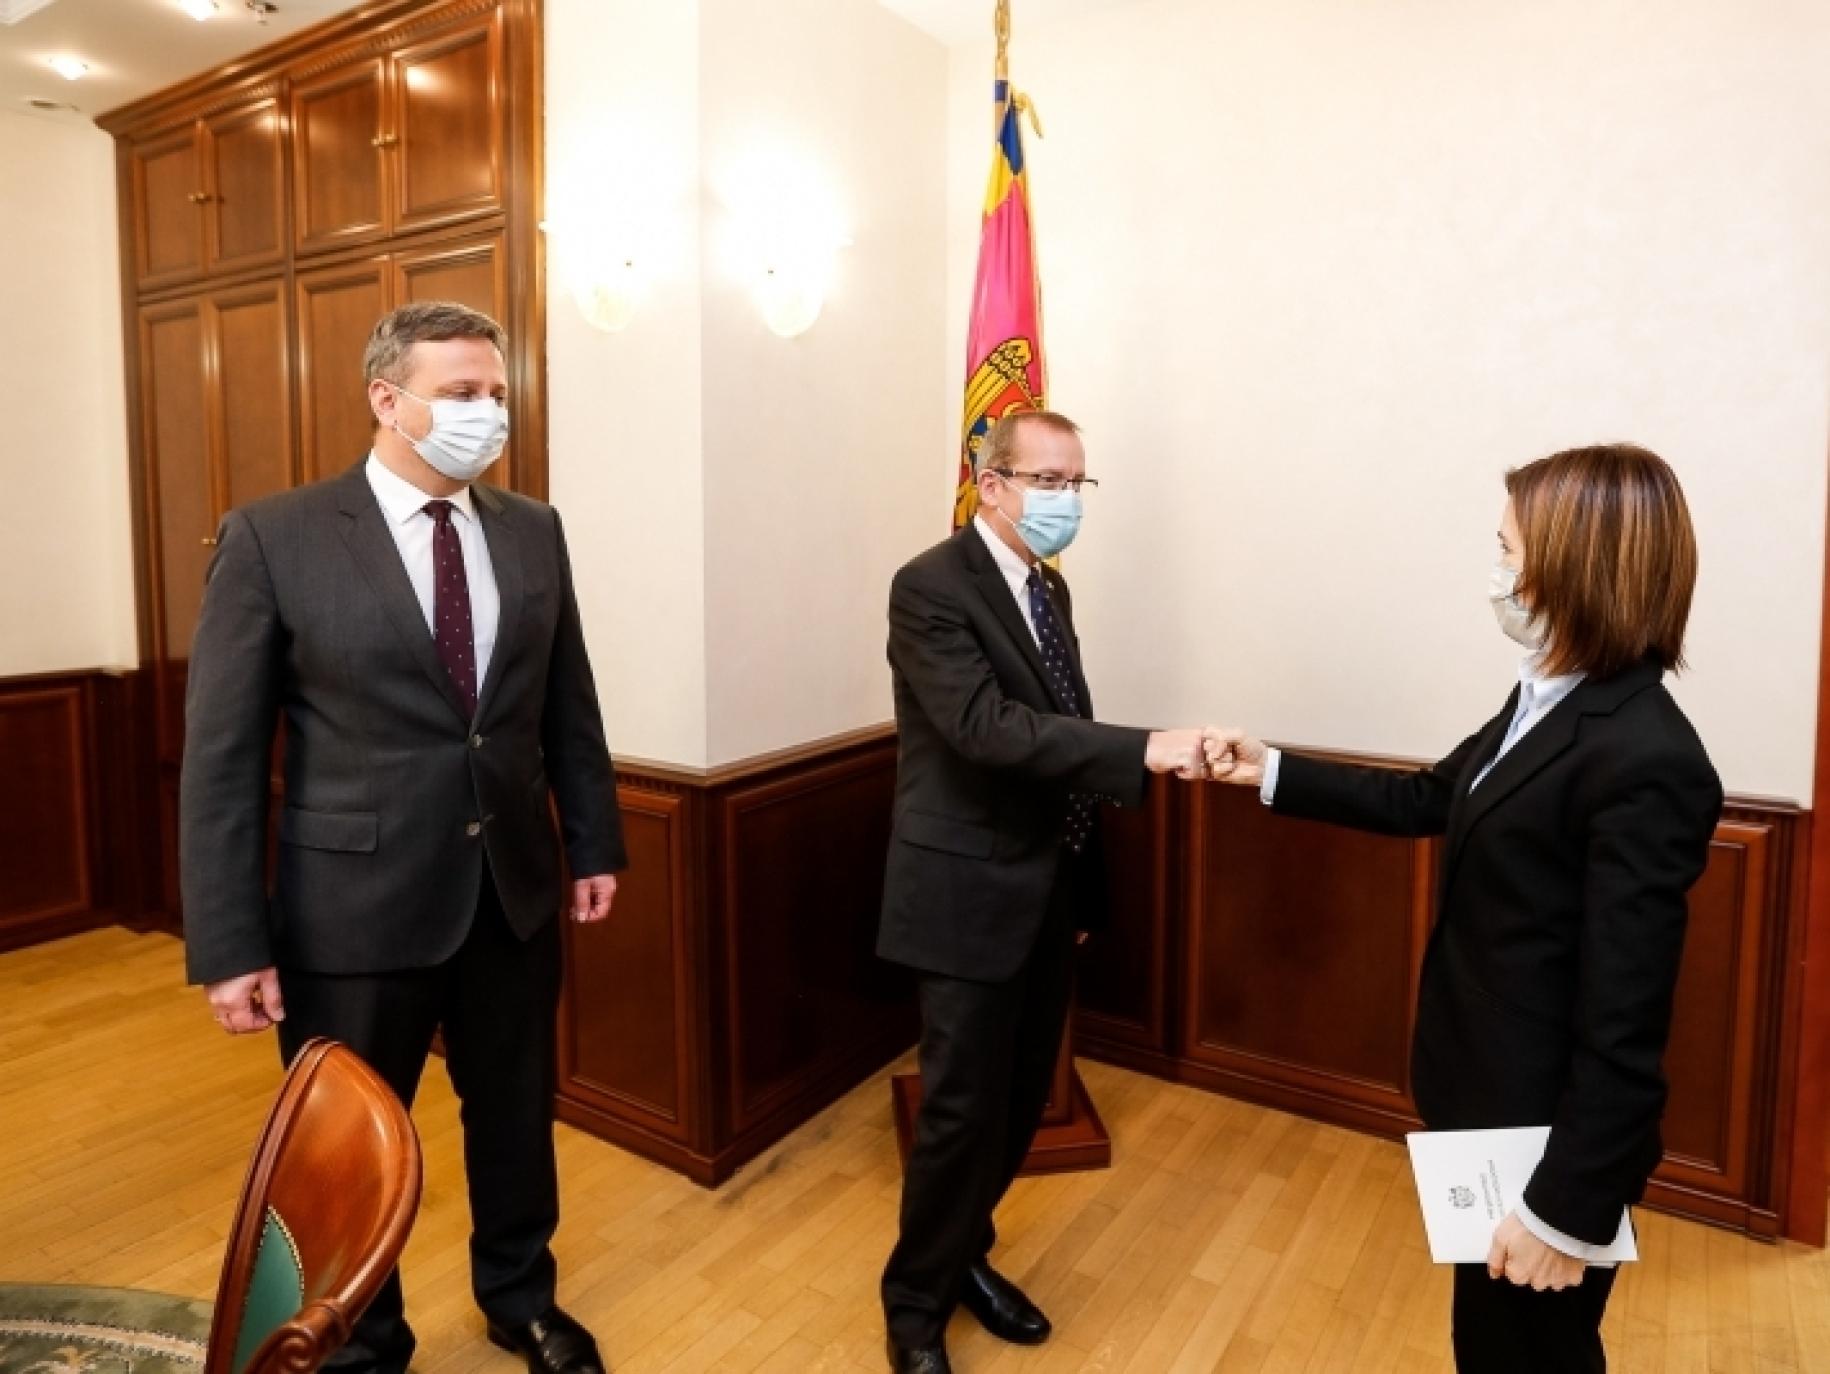 Un homme en costume et une femme en tailleur se serrent la main tandis qu'un autre homme se tient debout à côté d'eux. Tous trois portent un masque de protection respiratoire.